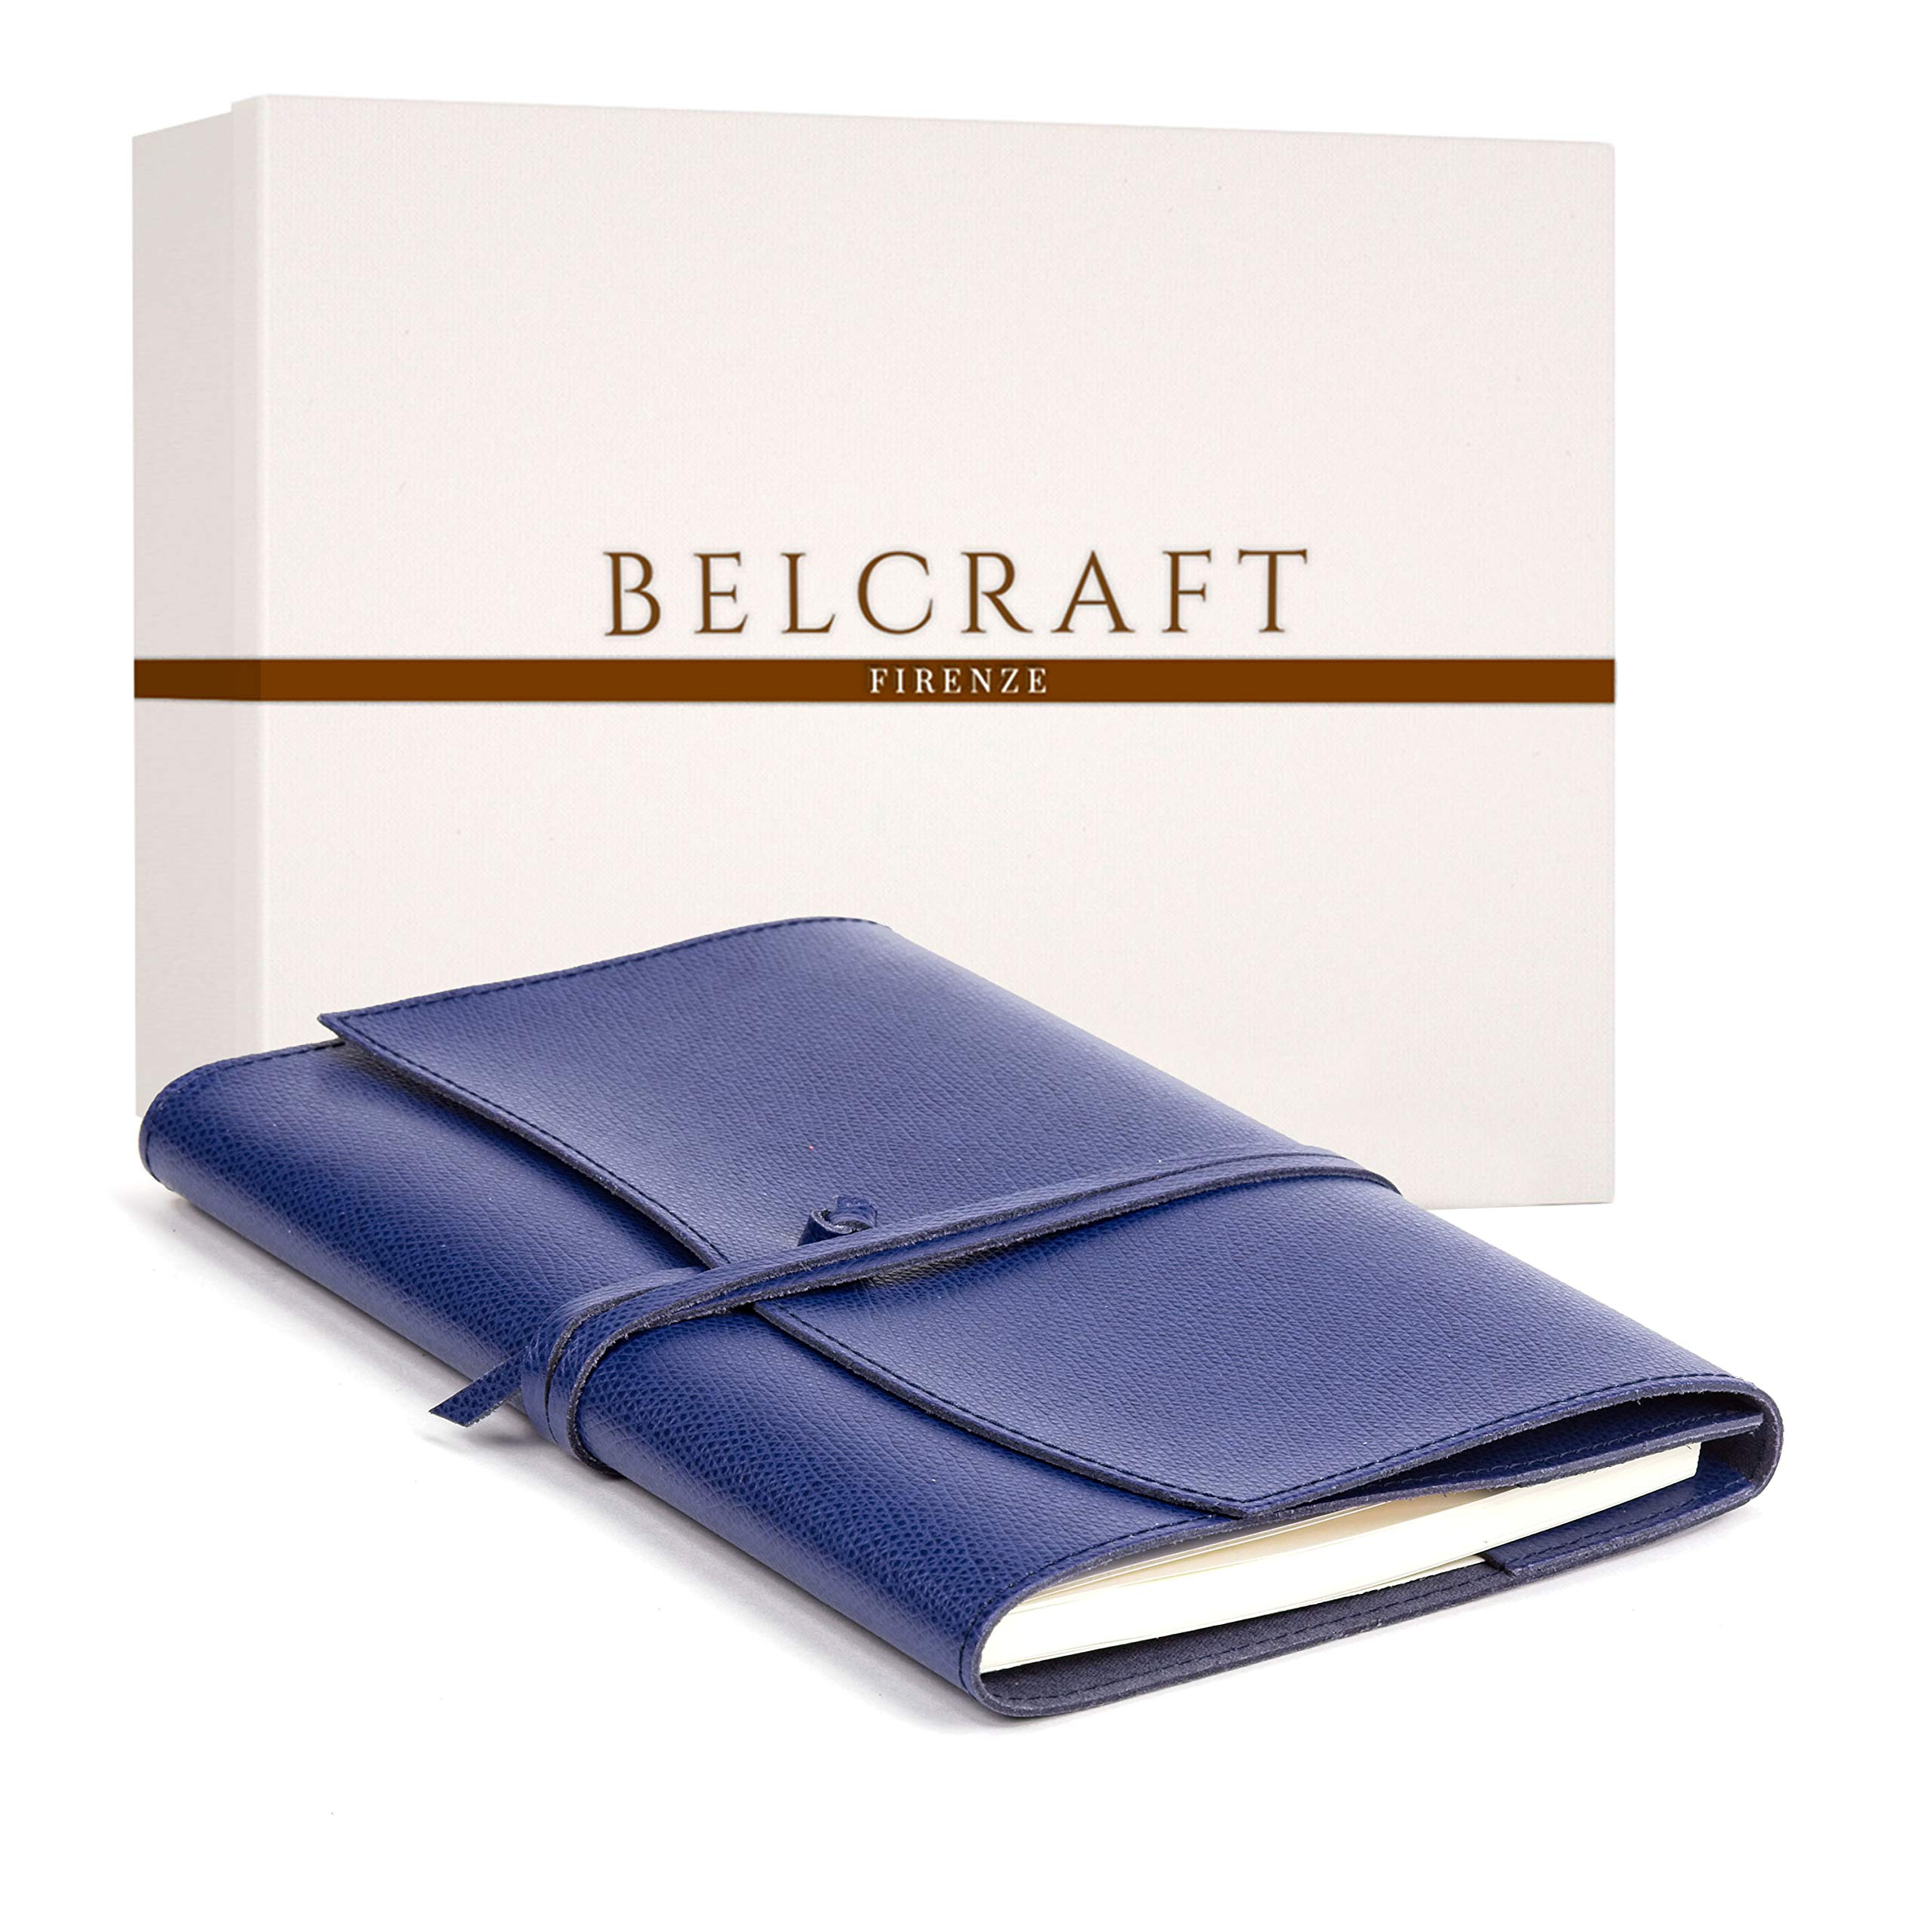 Portofino mittelgroßes Nachfüllbar Notizbuch aus Leder, Handgearbeitet in klassischem Italienischem Stil, Geschenkschachtel inklusive, Tagebuch, Lederbuch (12x17 cm) Blau